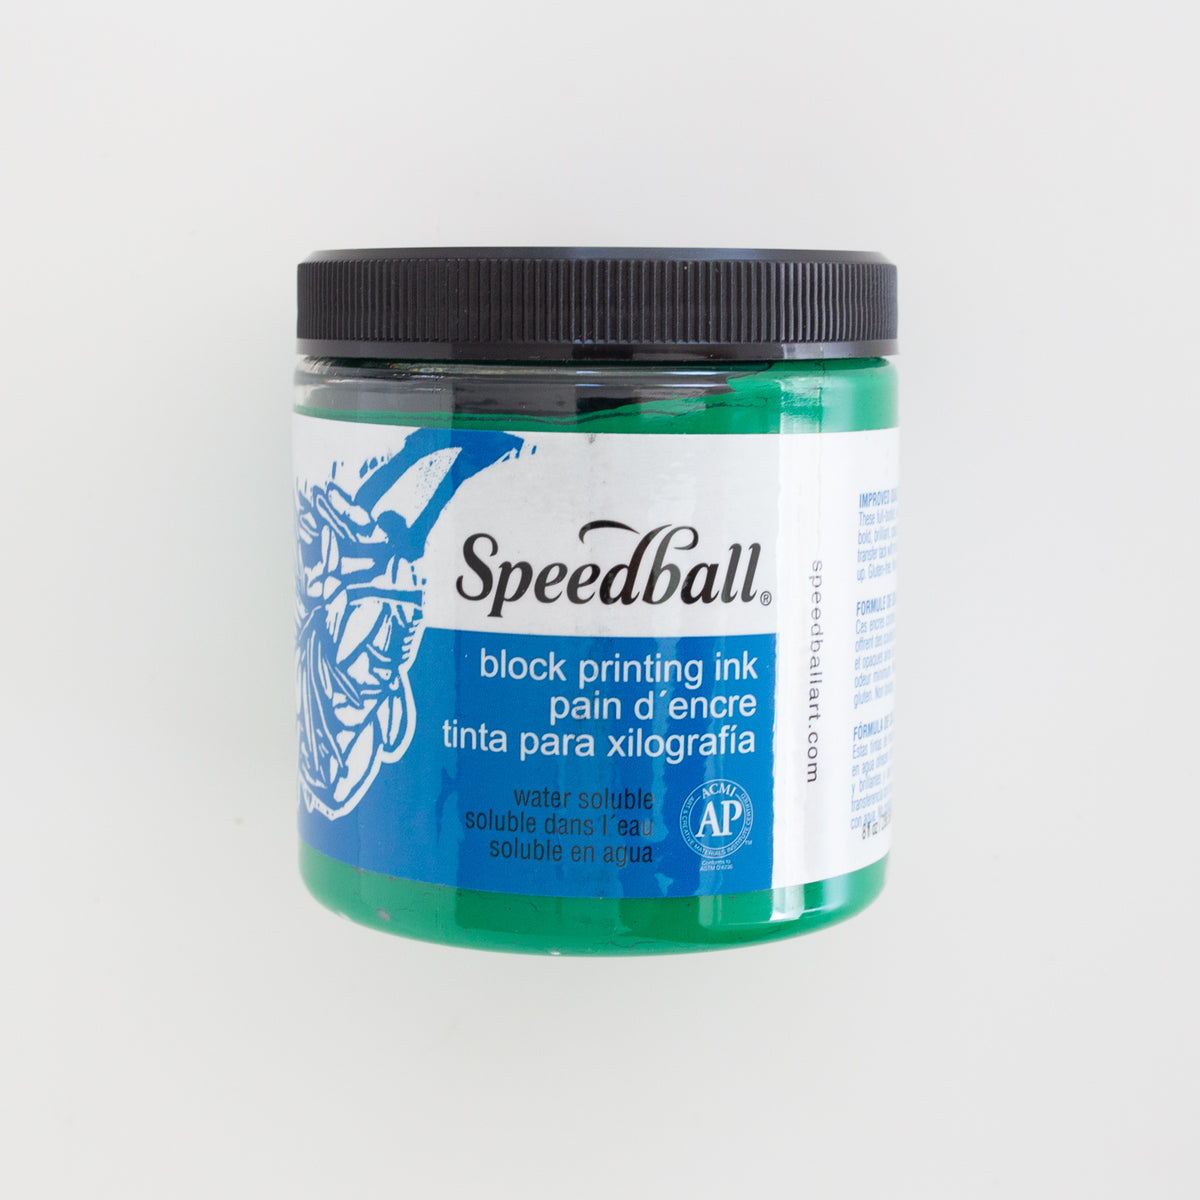 Wasserlösliche Speedball-Blocktinte, 8 Unzen (237 ml), Grün